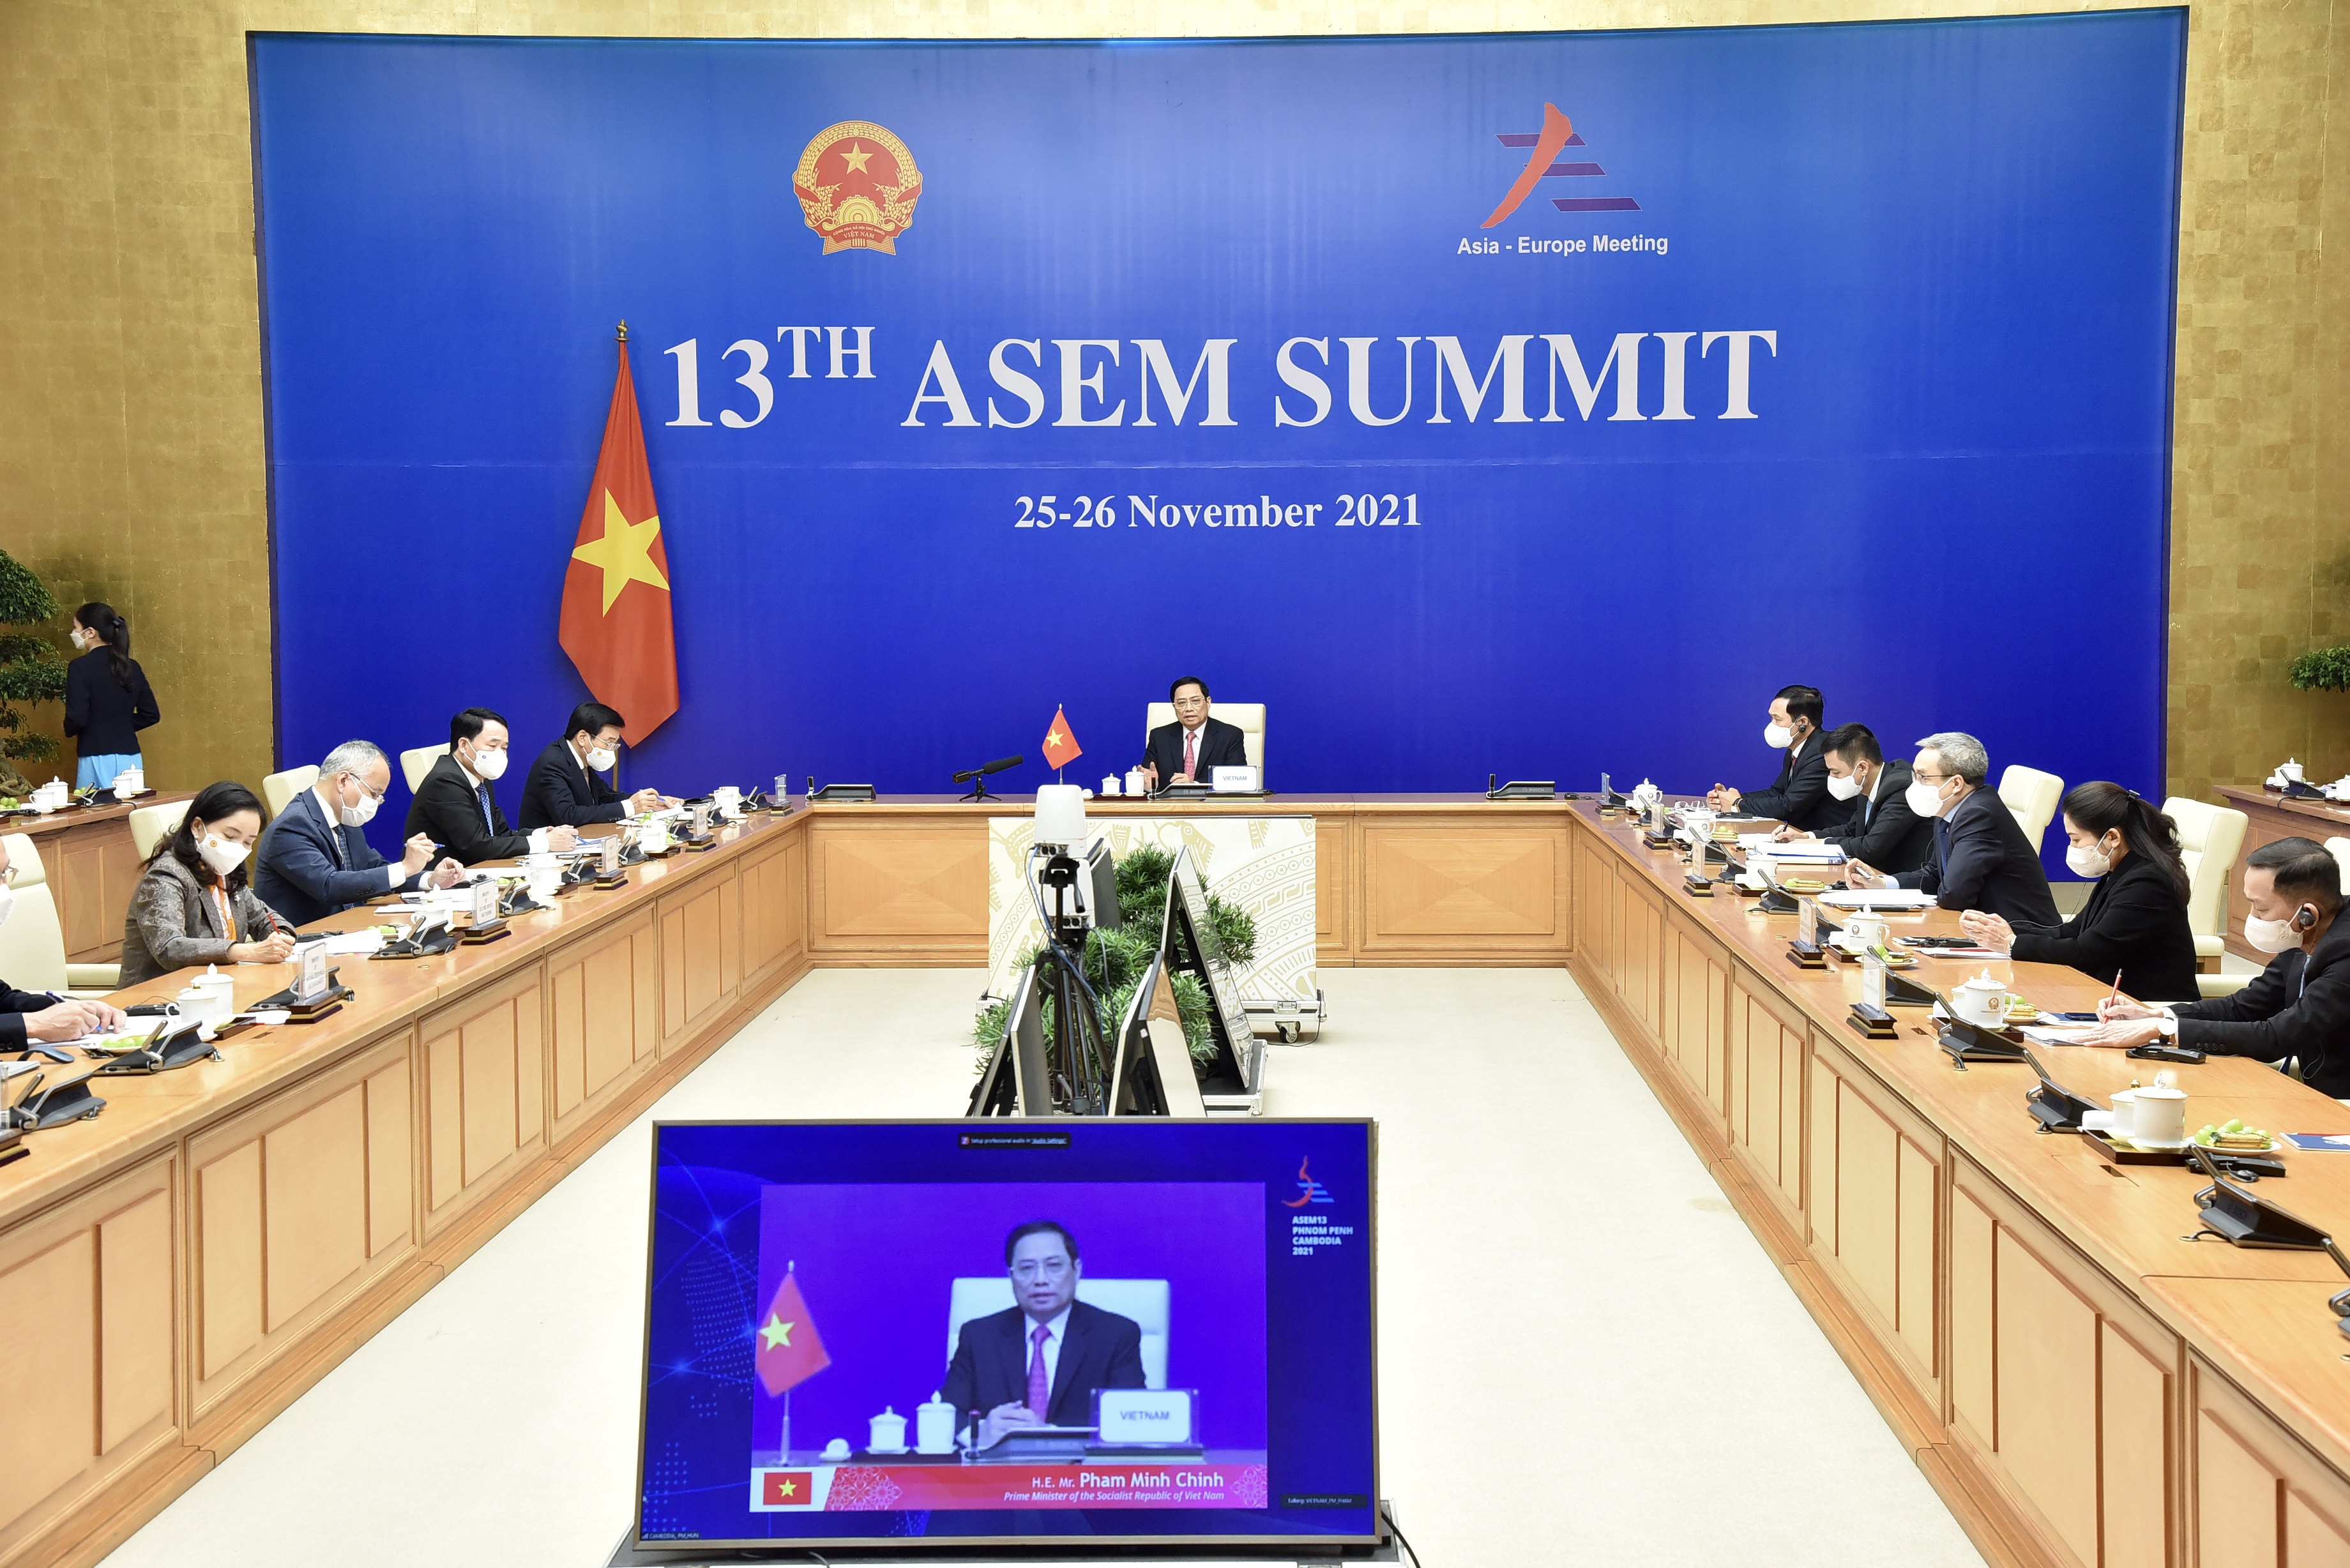 Các nhà lãnh đạo chia sẻ quan điểm về tình hình chính trị, kinh tế xã hội tại hai châu lục và thảo luận về các phương hướng nhằm thúc đẩy hơn nữa hợp tác ASEM.. Ảnh VGP/Nhật Bắc